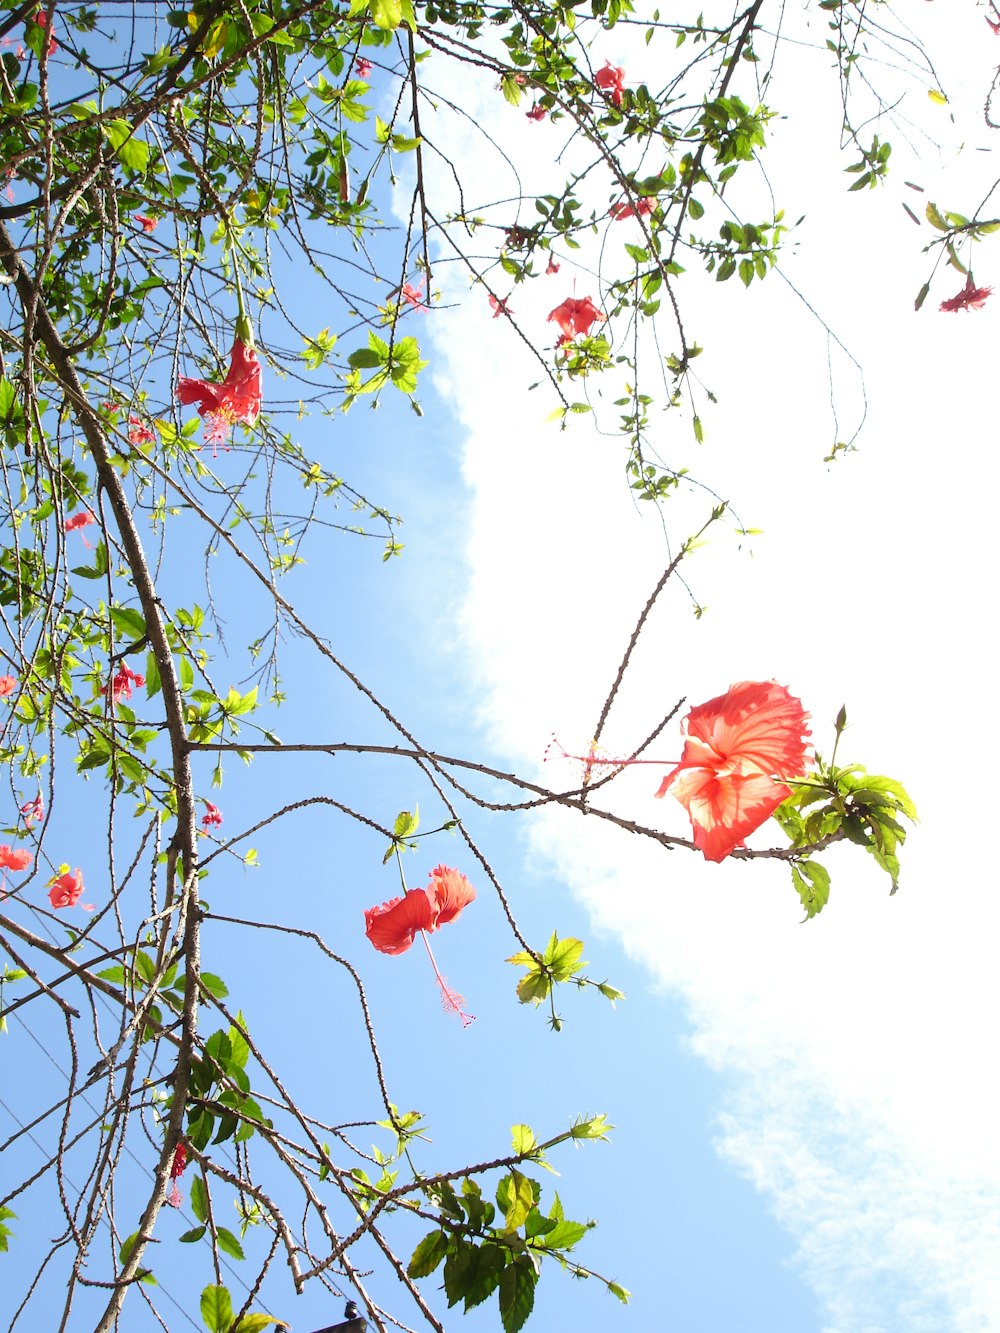 flor roja en la rama de un árbol durante el día